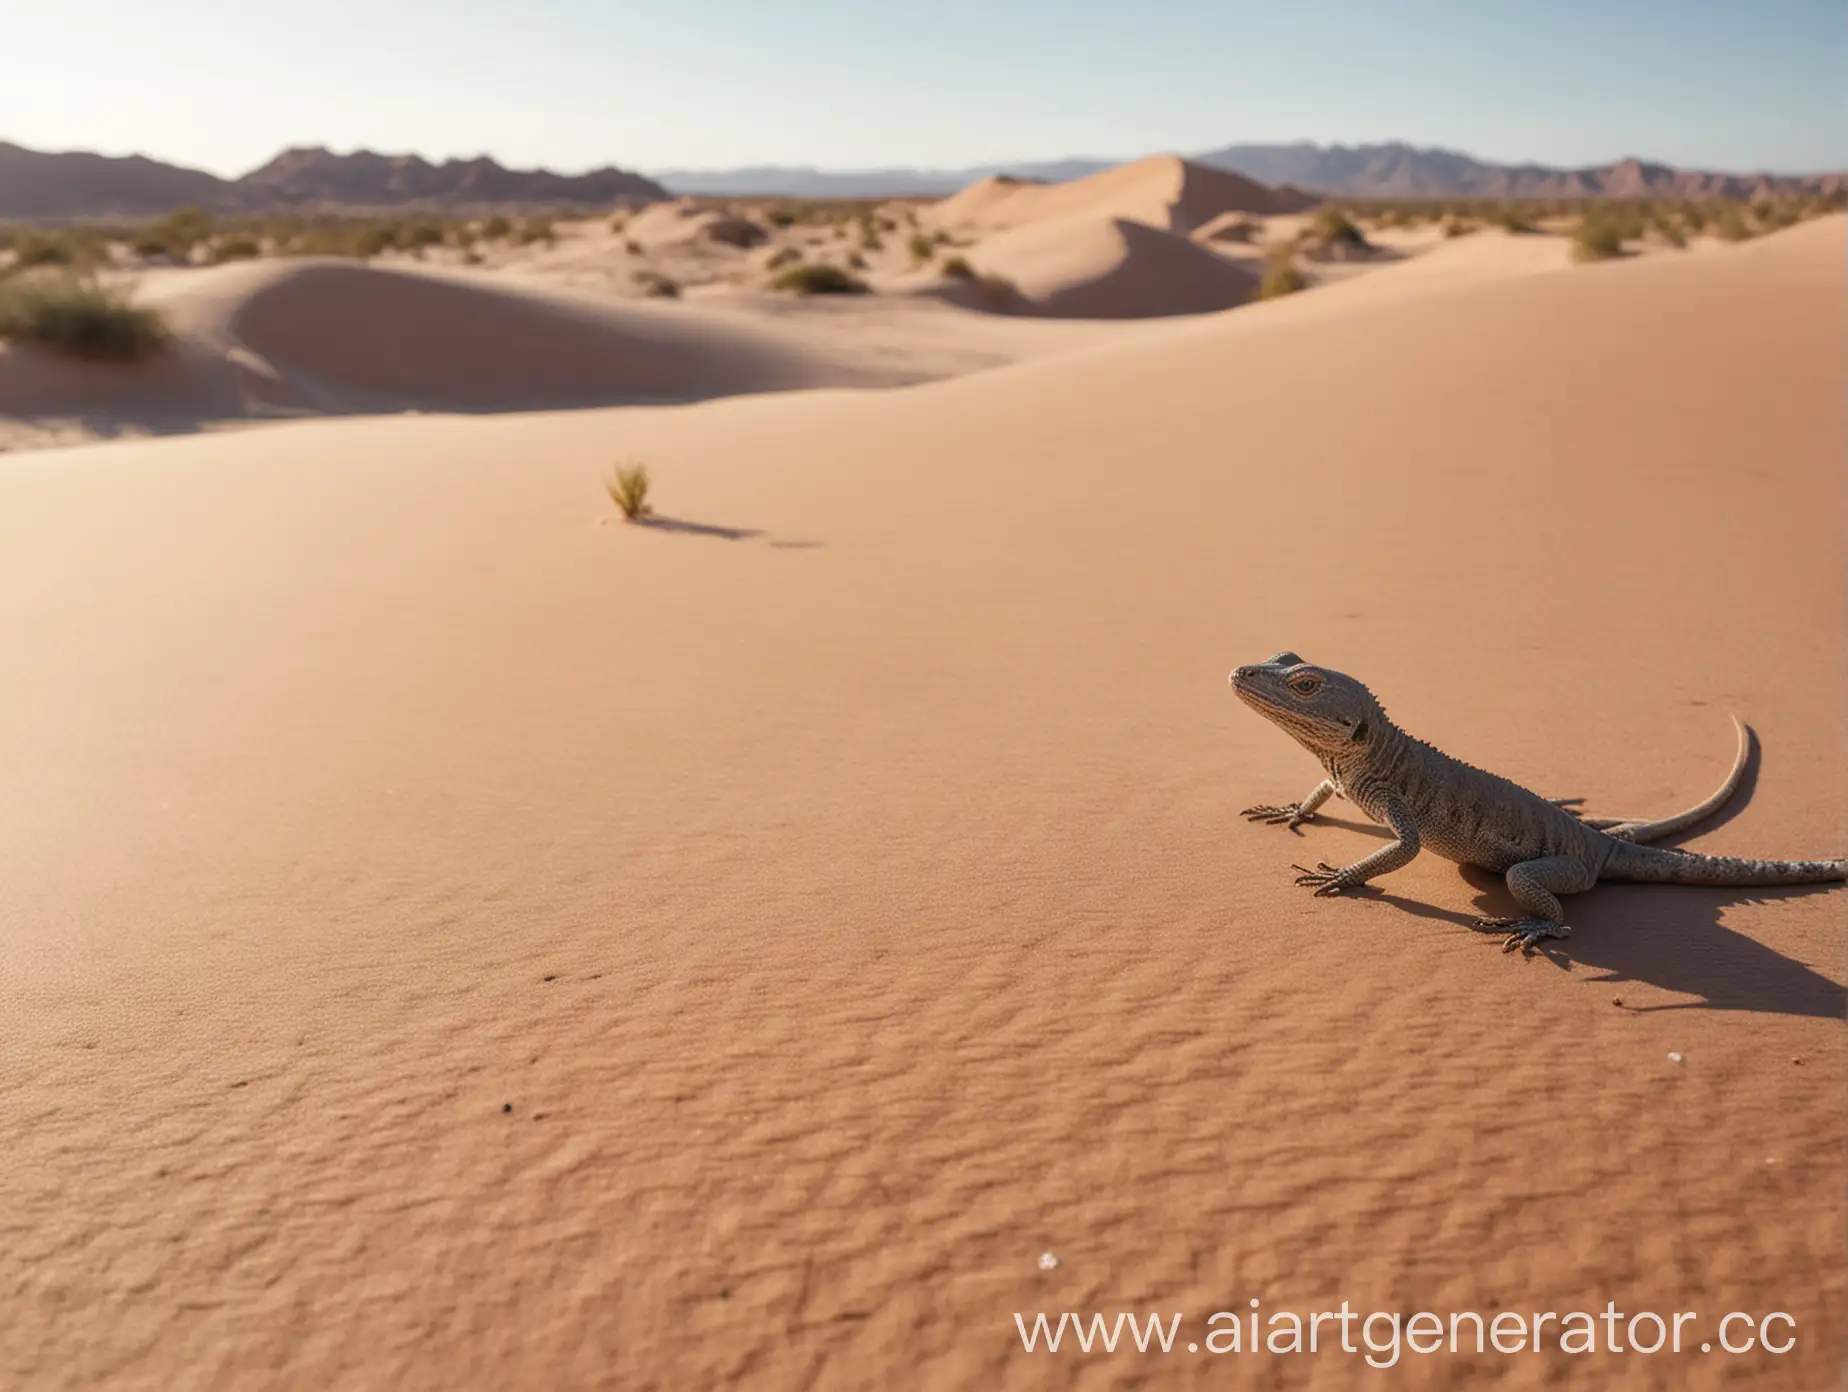 Создай фото пустыни с невысокими дюнами
и небольшой ящерицей на переднем плане
